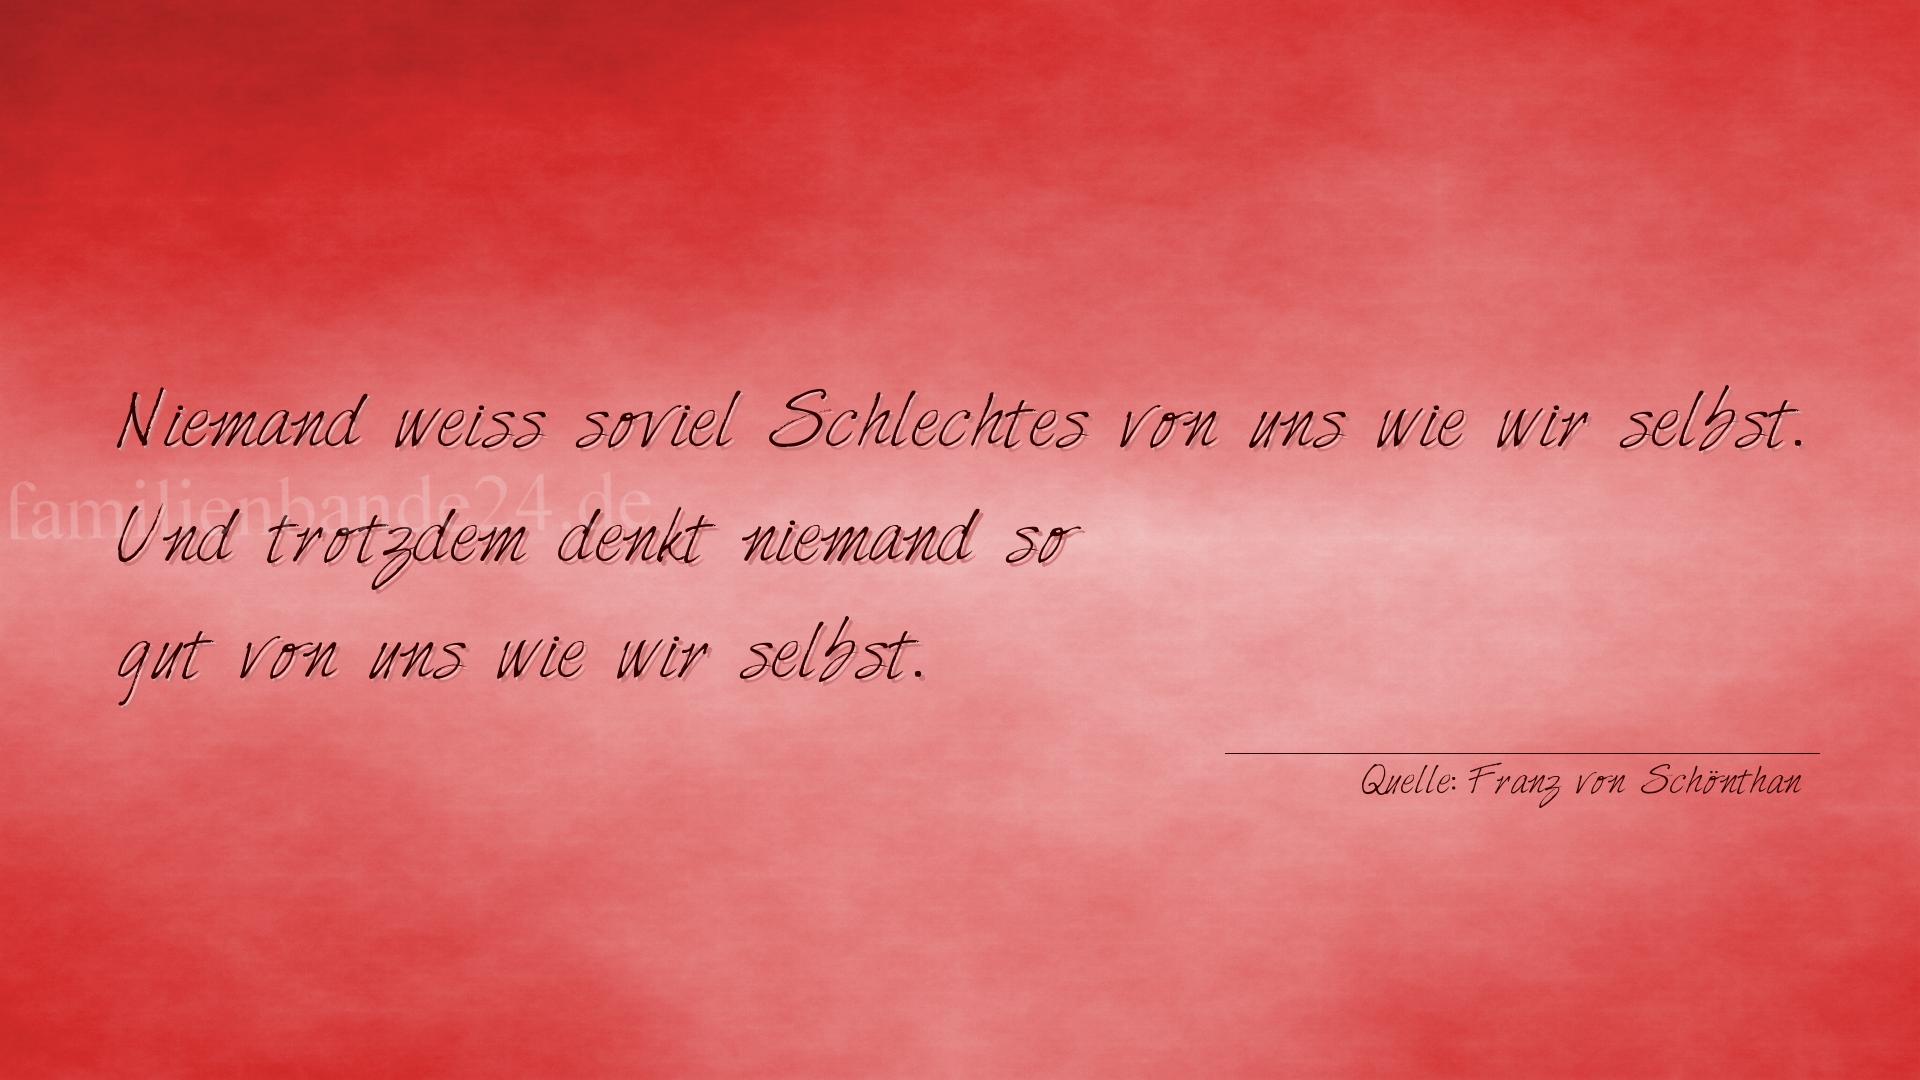 Aphorismus Nummer 1332 (von Franz von Schönthan): "Niemand weiß soviel Schlechtes von uns wie wir selbst. U [...]